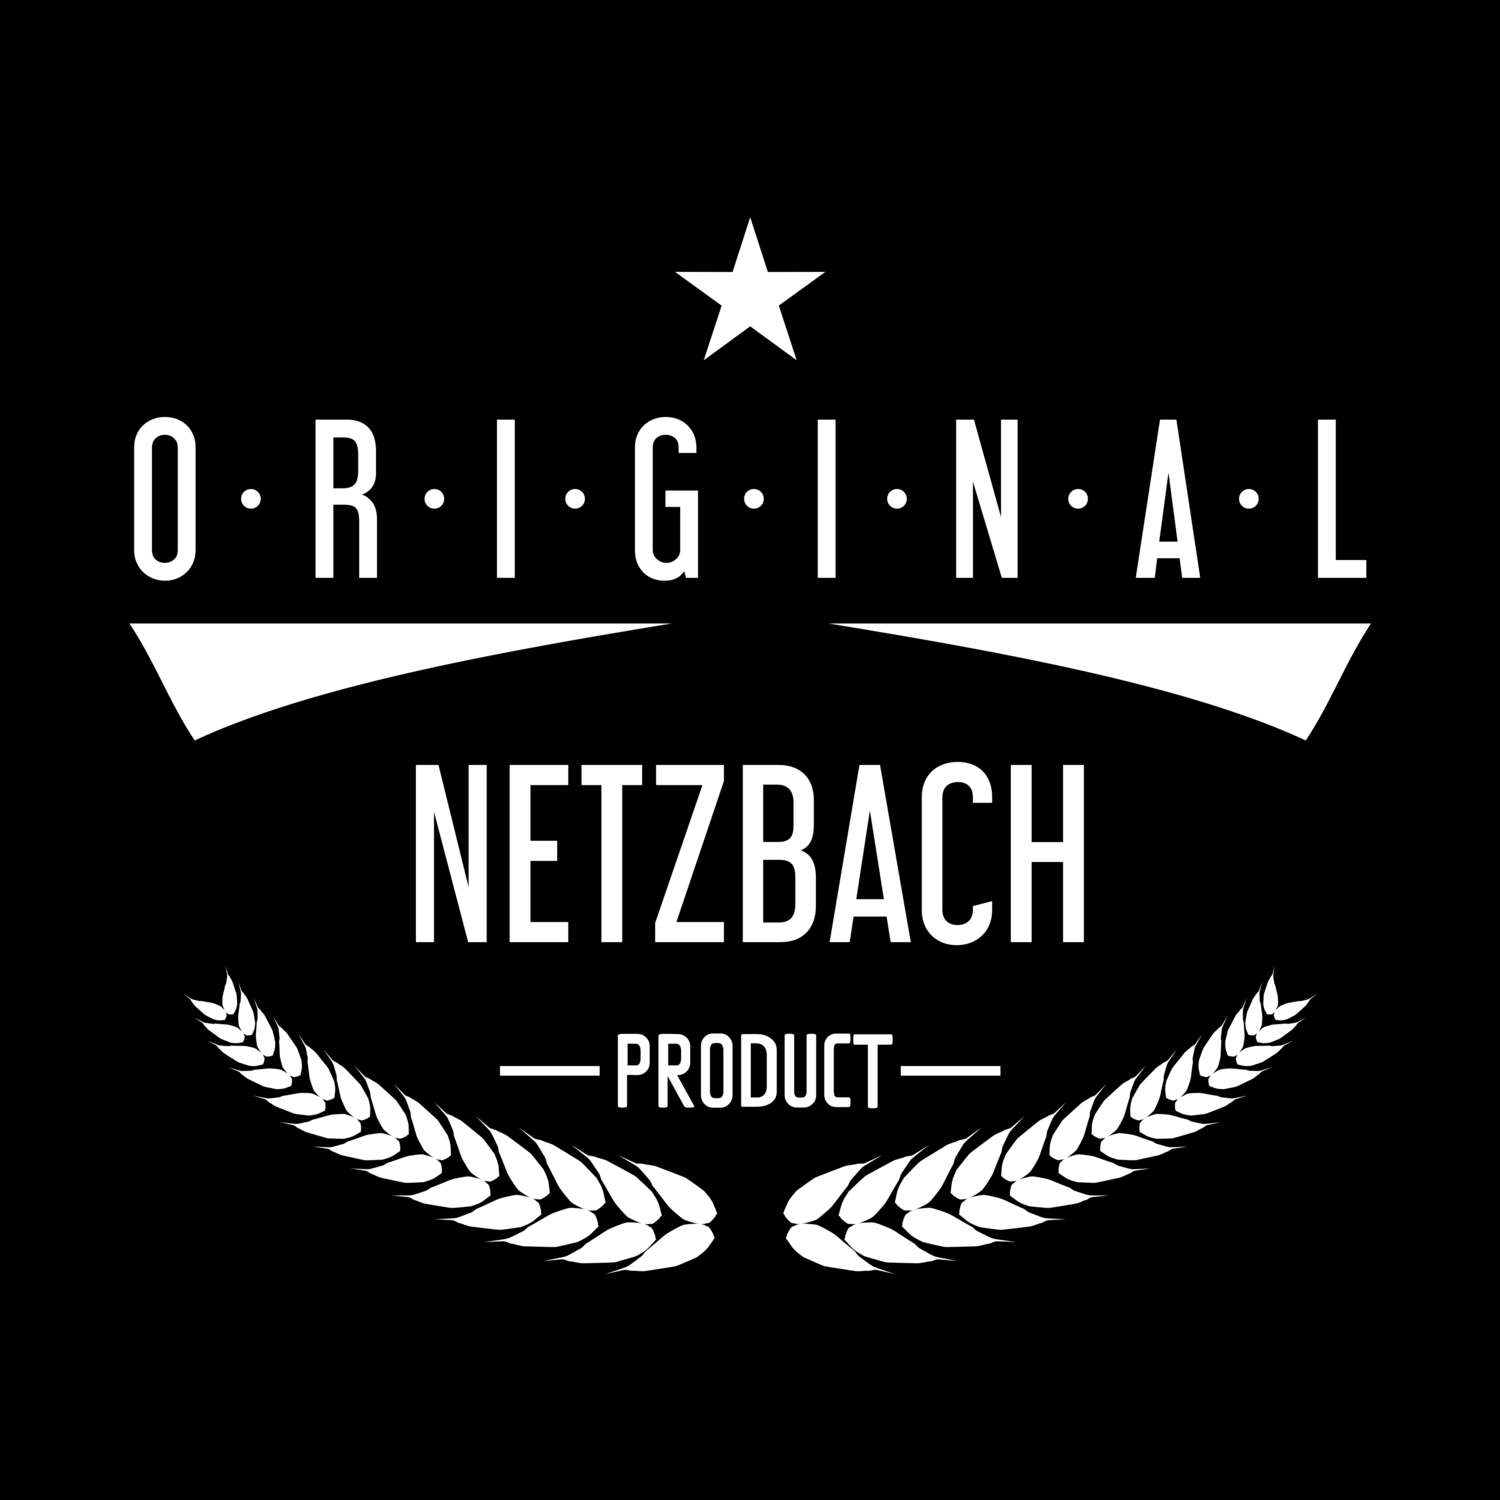 Netzbach T-Shirt »Original Product«